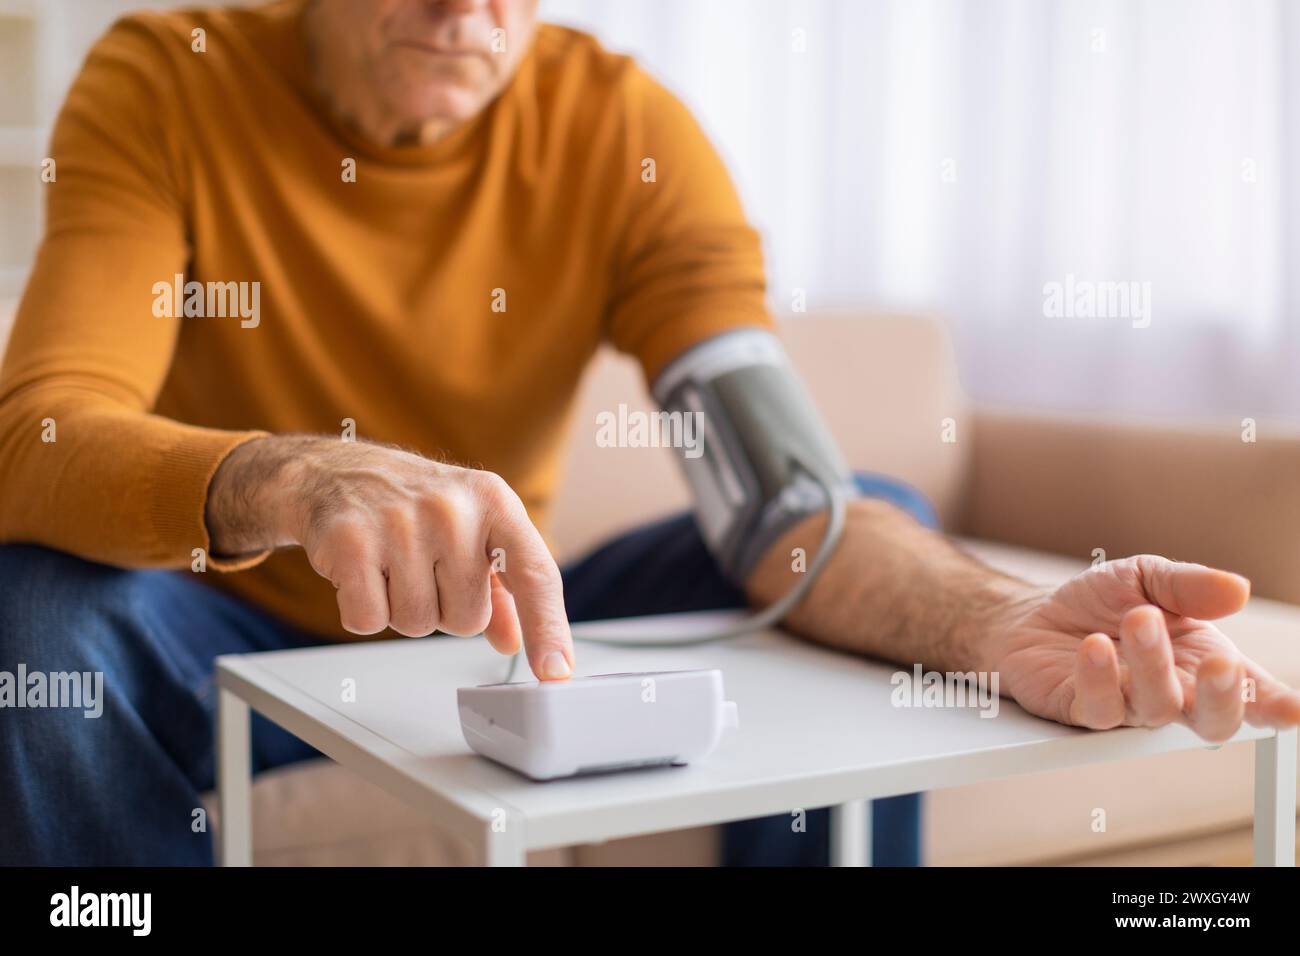 Homme mesurant la pression artérielle avec un moniteur numérique Banque D'Images